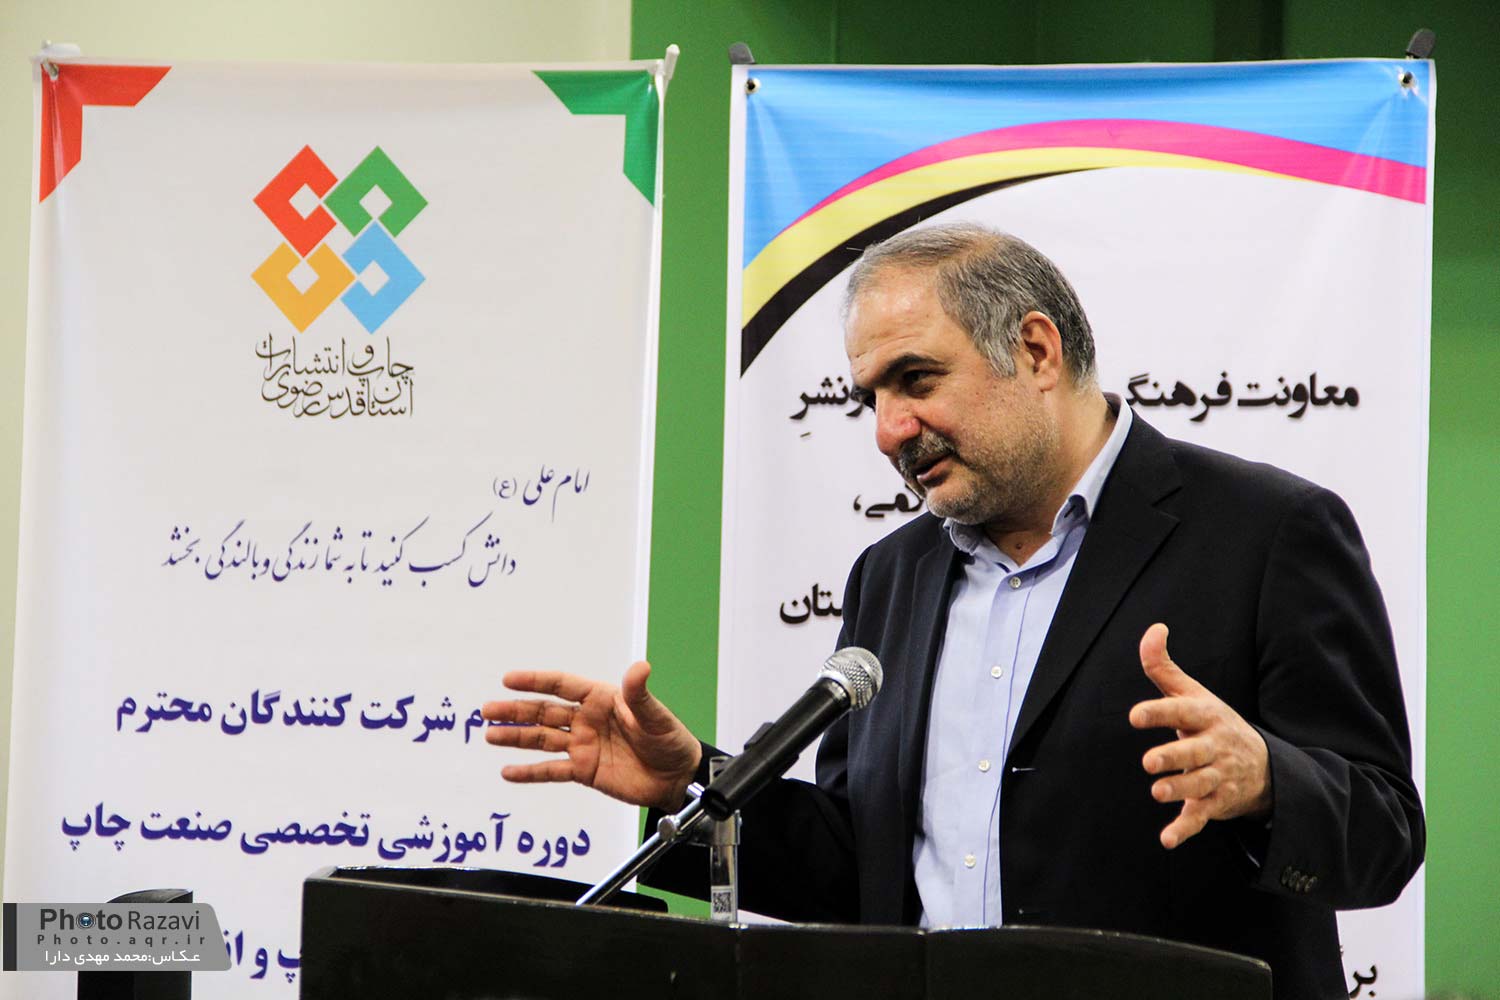 کاملترین خط صحافی ایران در چاپخانه آستان قدس رضوی